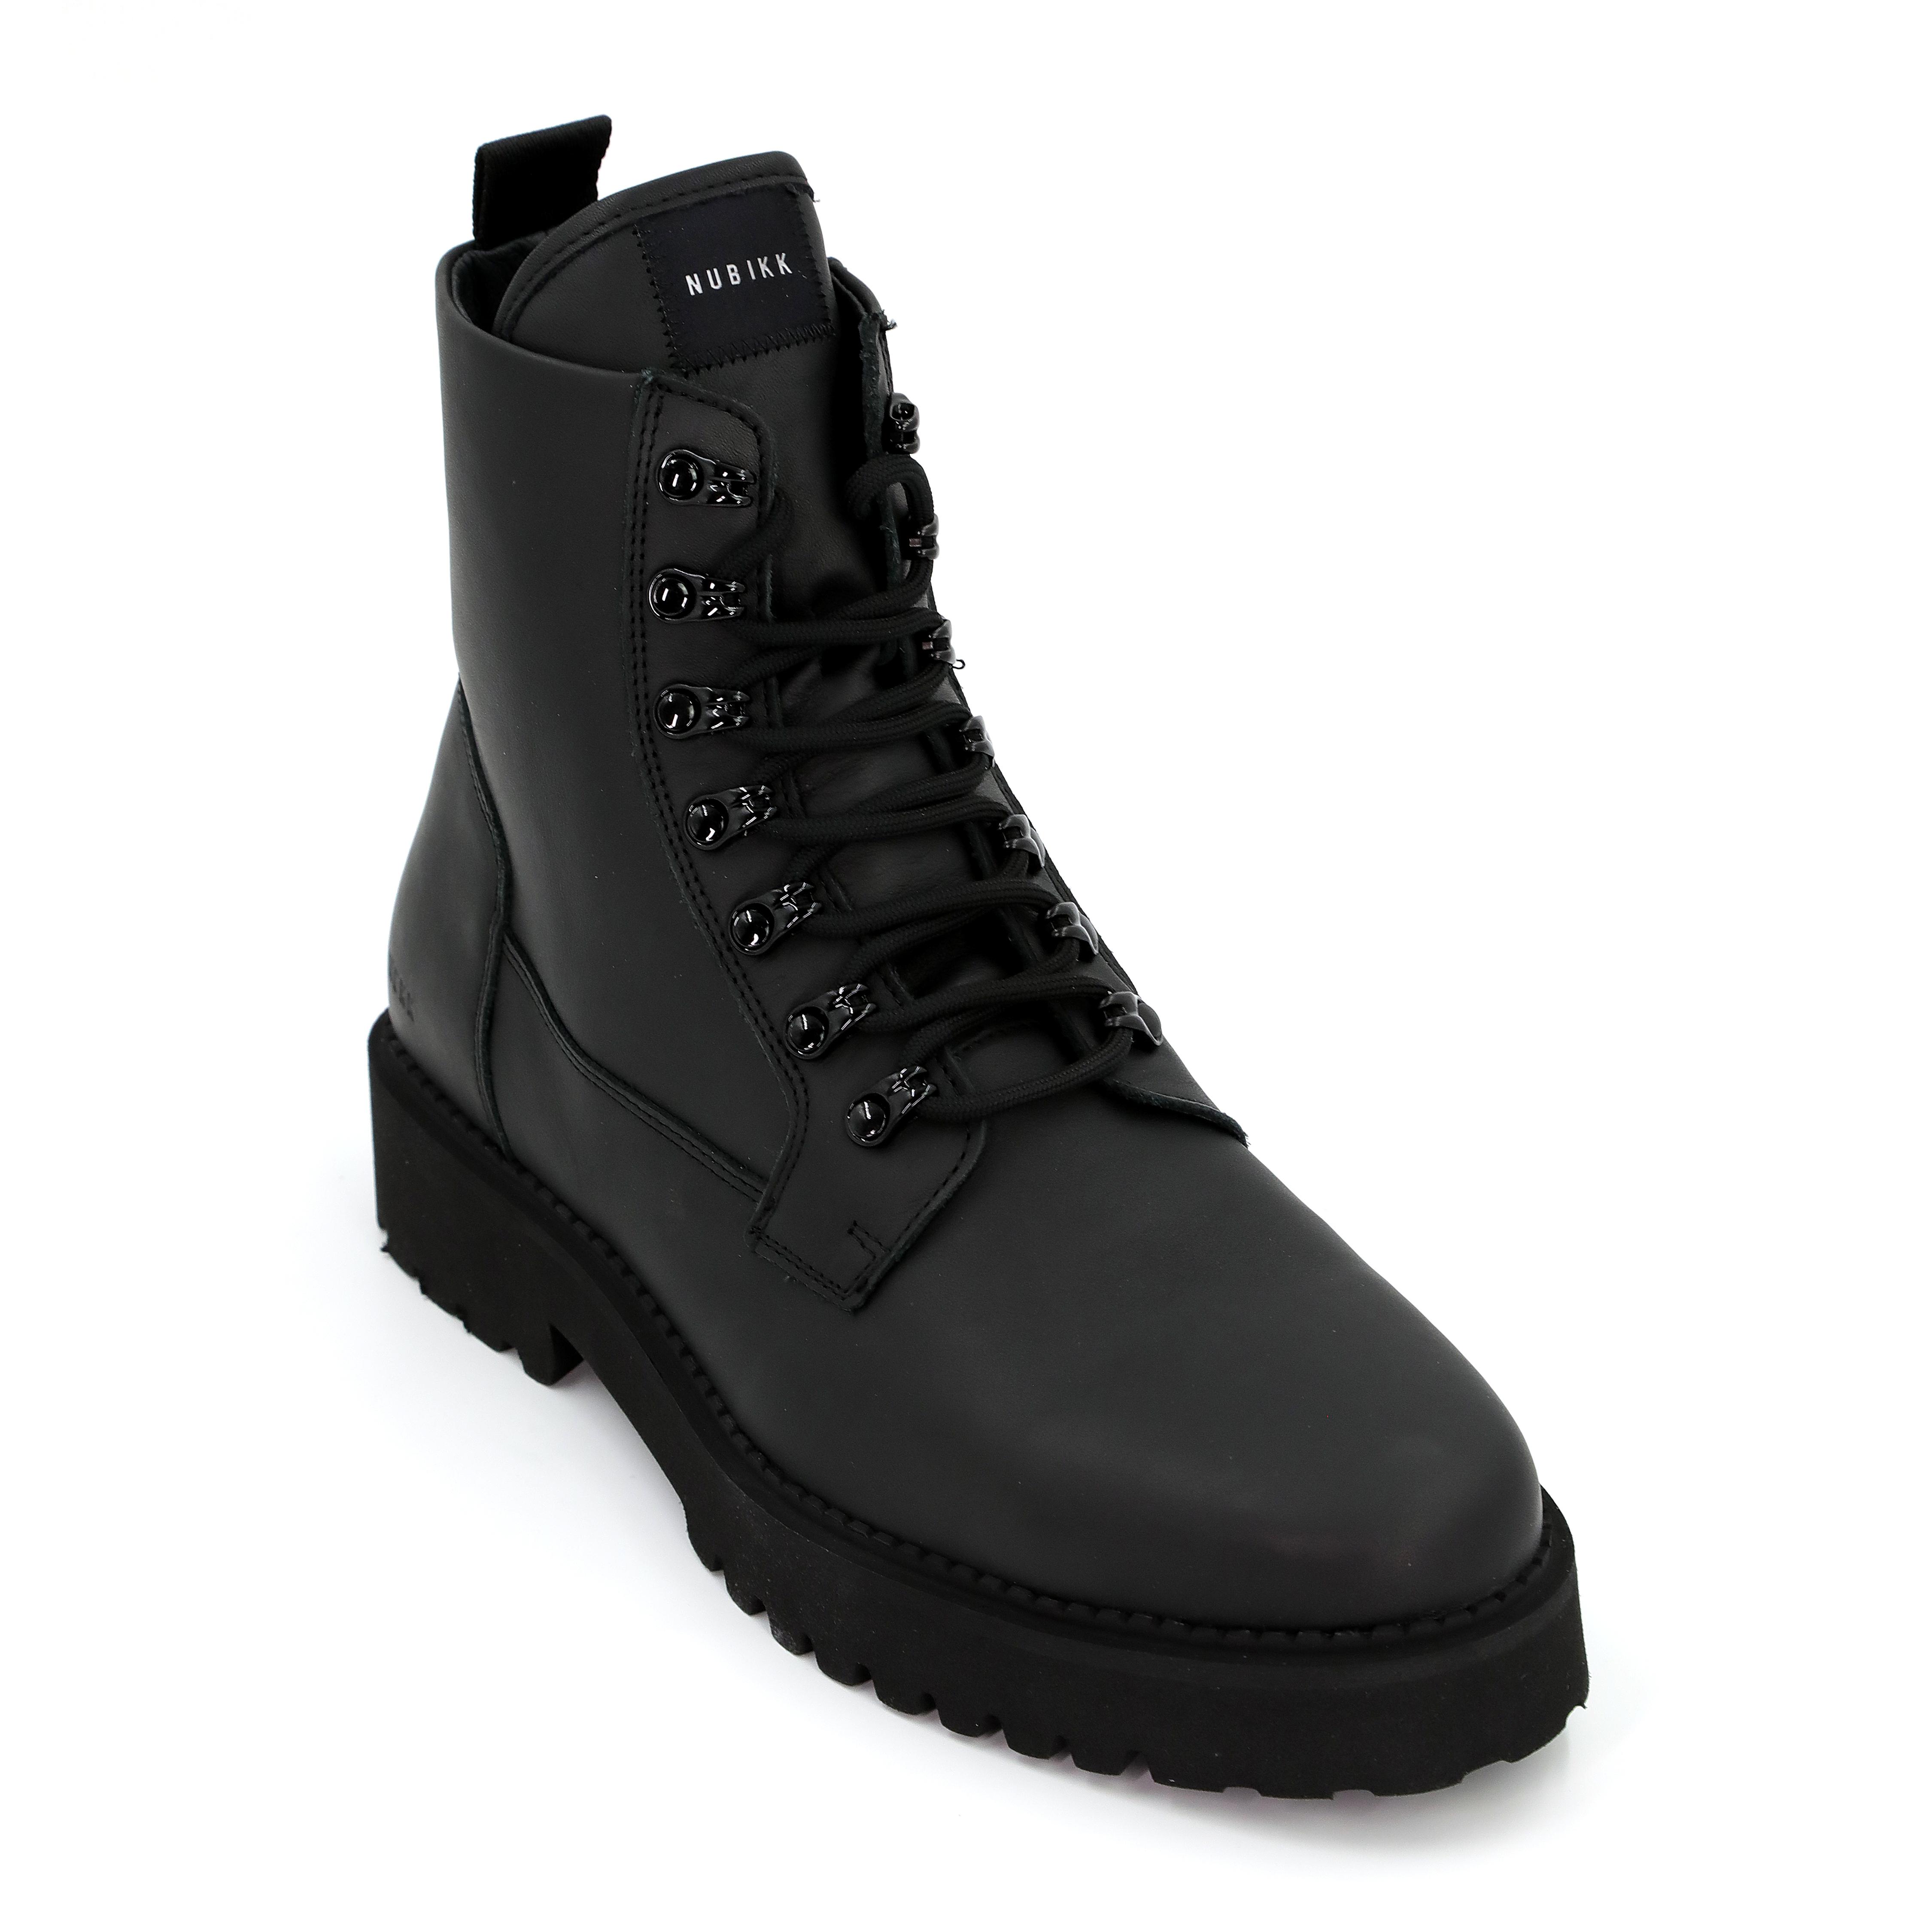 Мужские ботинки Nubikk, черные, цвет черный, размер 43 - фото 4